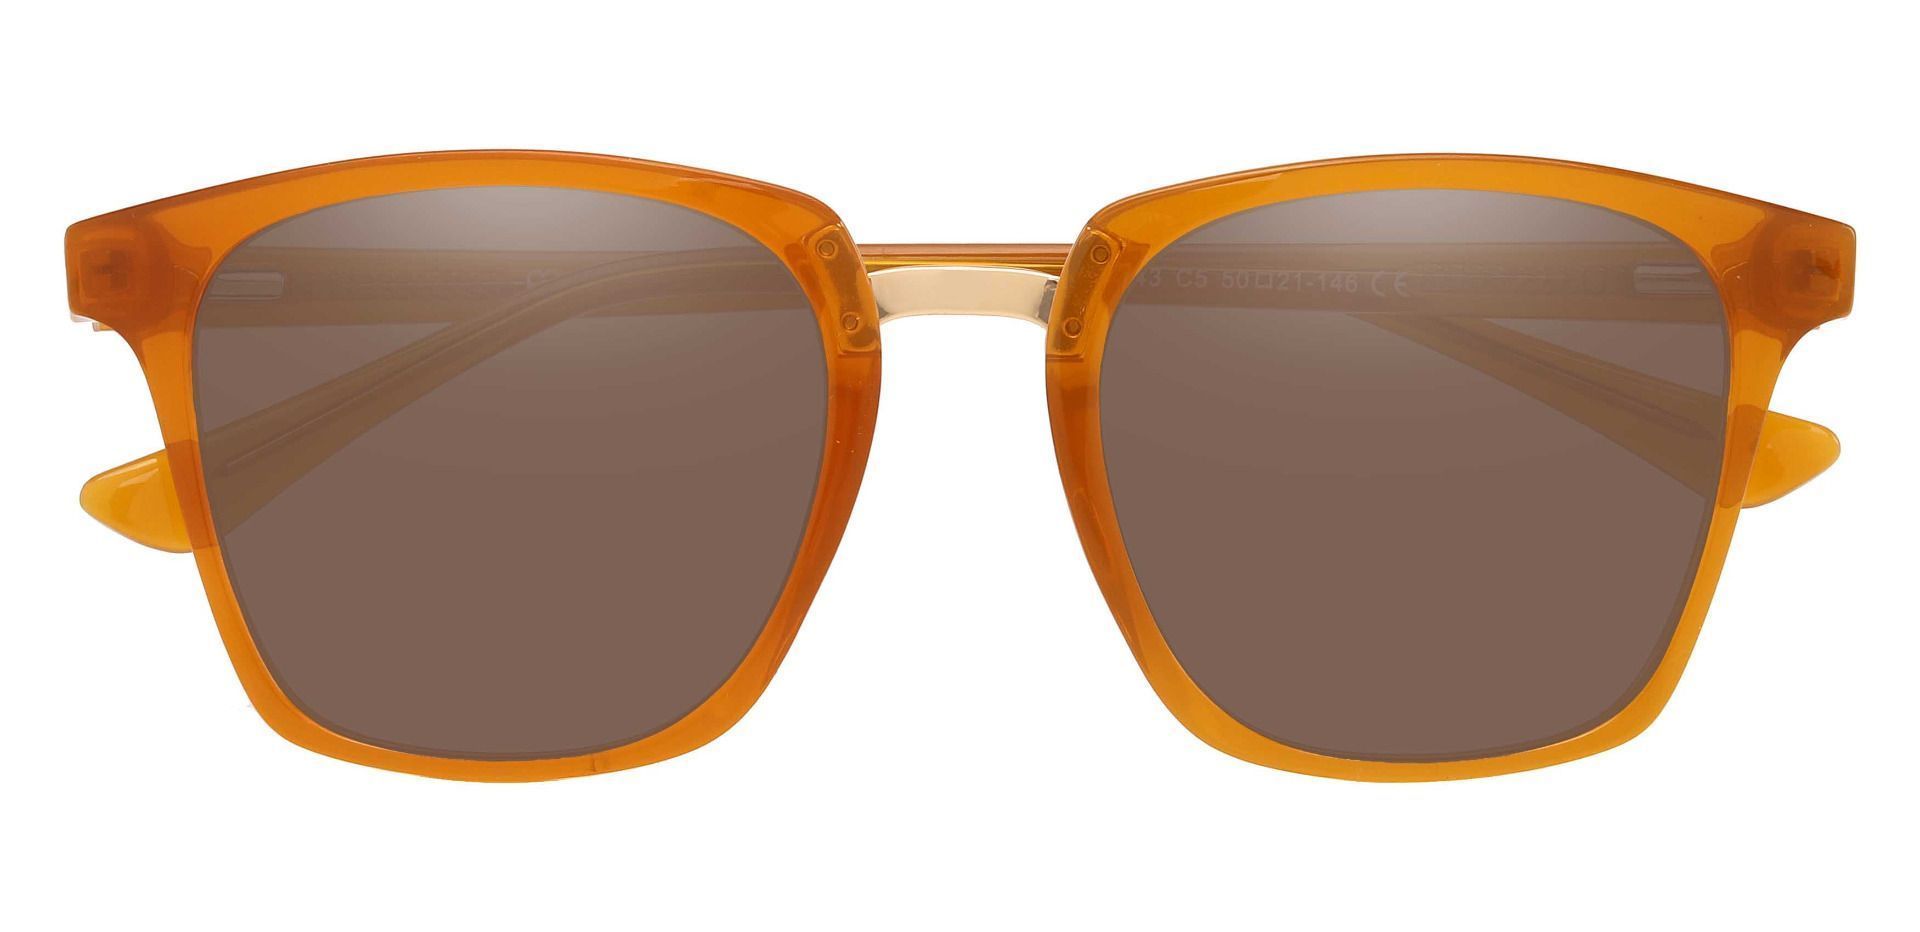 Delta Square Prescription Sunglasses - Orange Frame With Brown Lenses